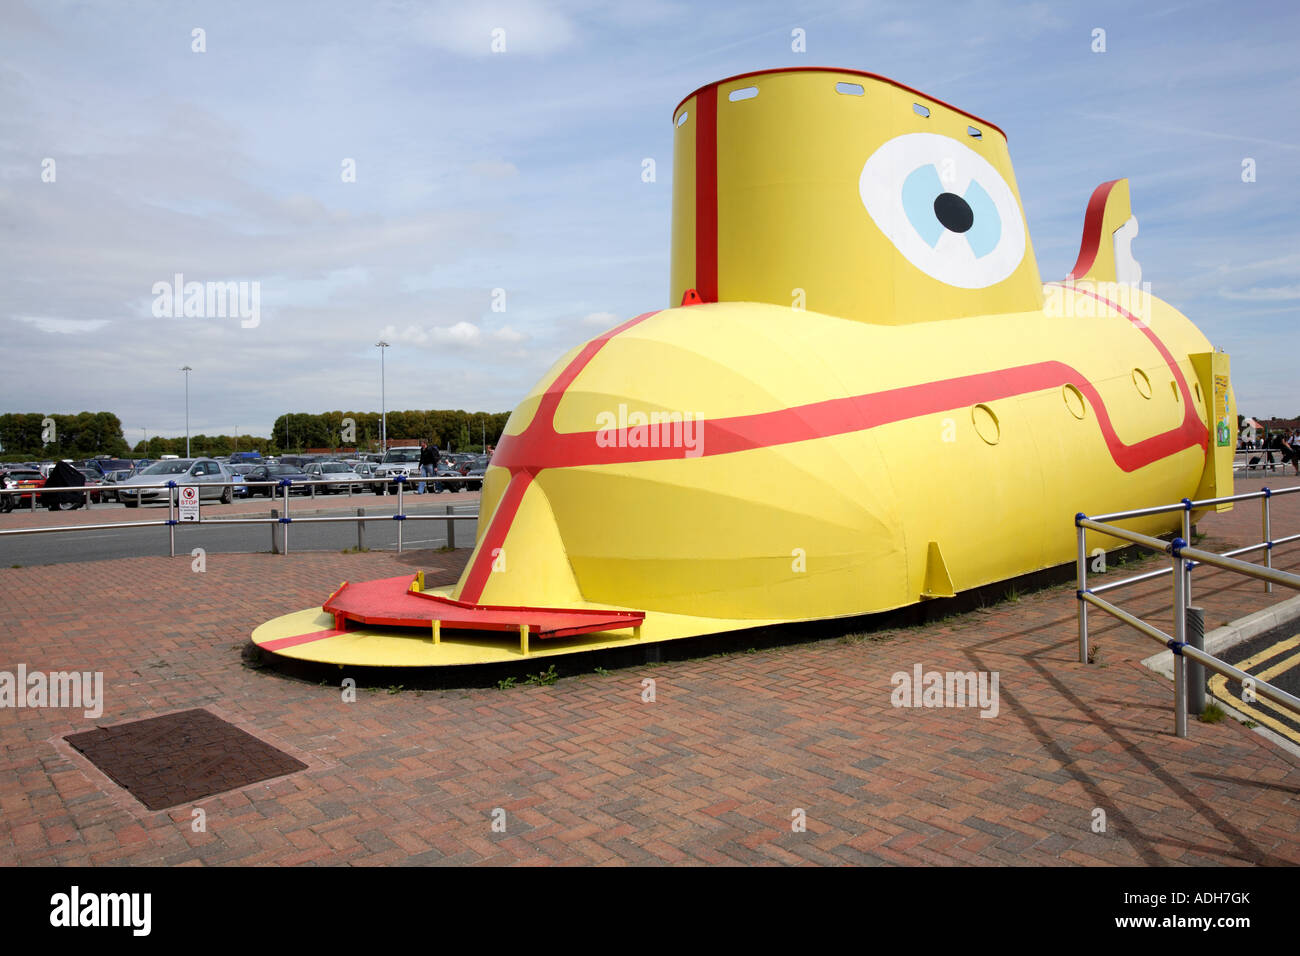 Sous-marin jaune garé à l'extérieur de l'aéroport John Lennon de Liverpool, chanson de Ringo Starr de l'album 'Revolver' Banque D'Images